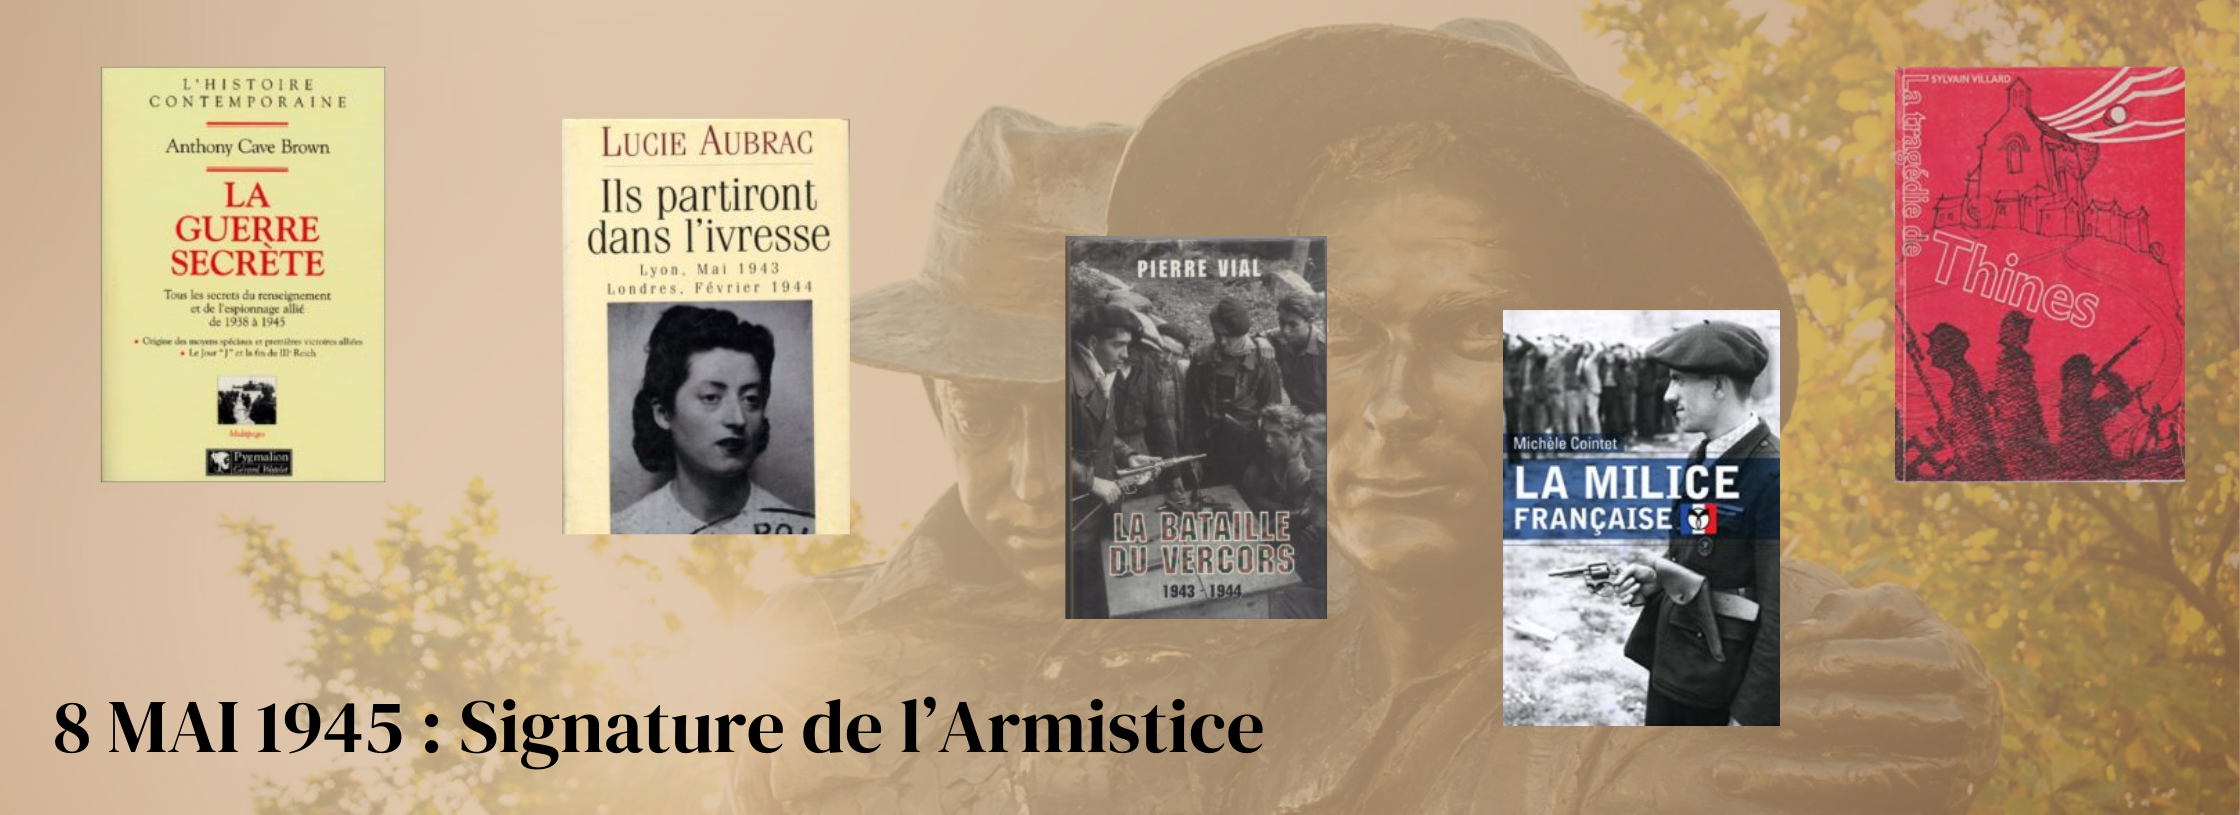 8 mai 1945 : signature de l'armistice livres occasion histoire librairie lirandco librairie ardeche